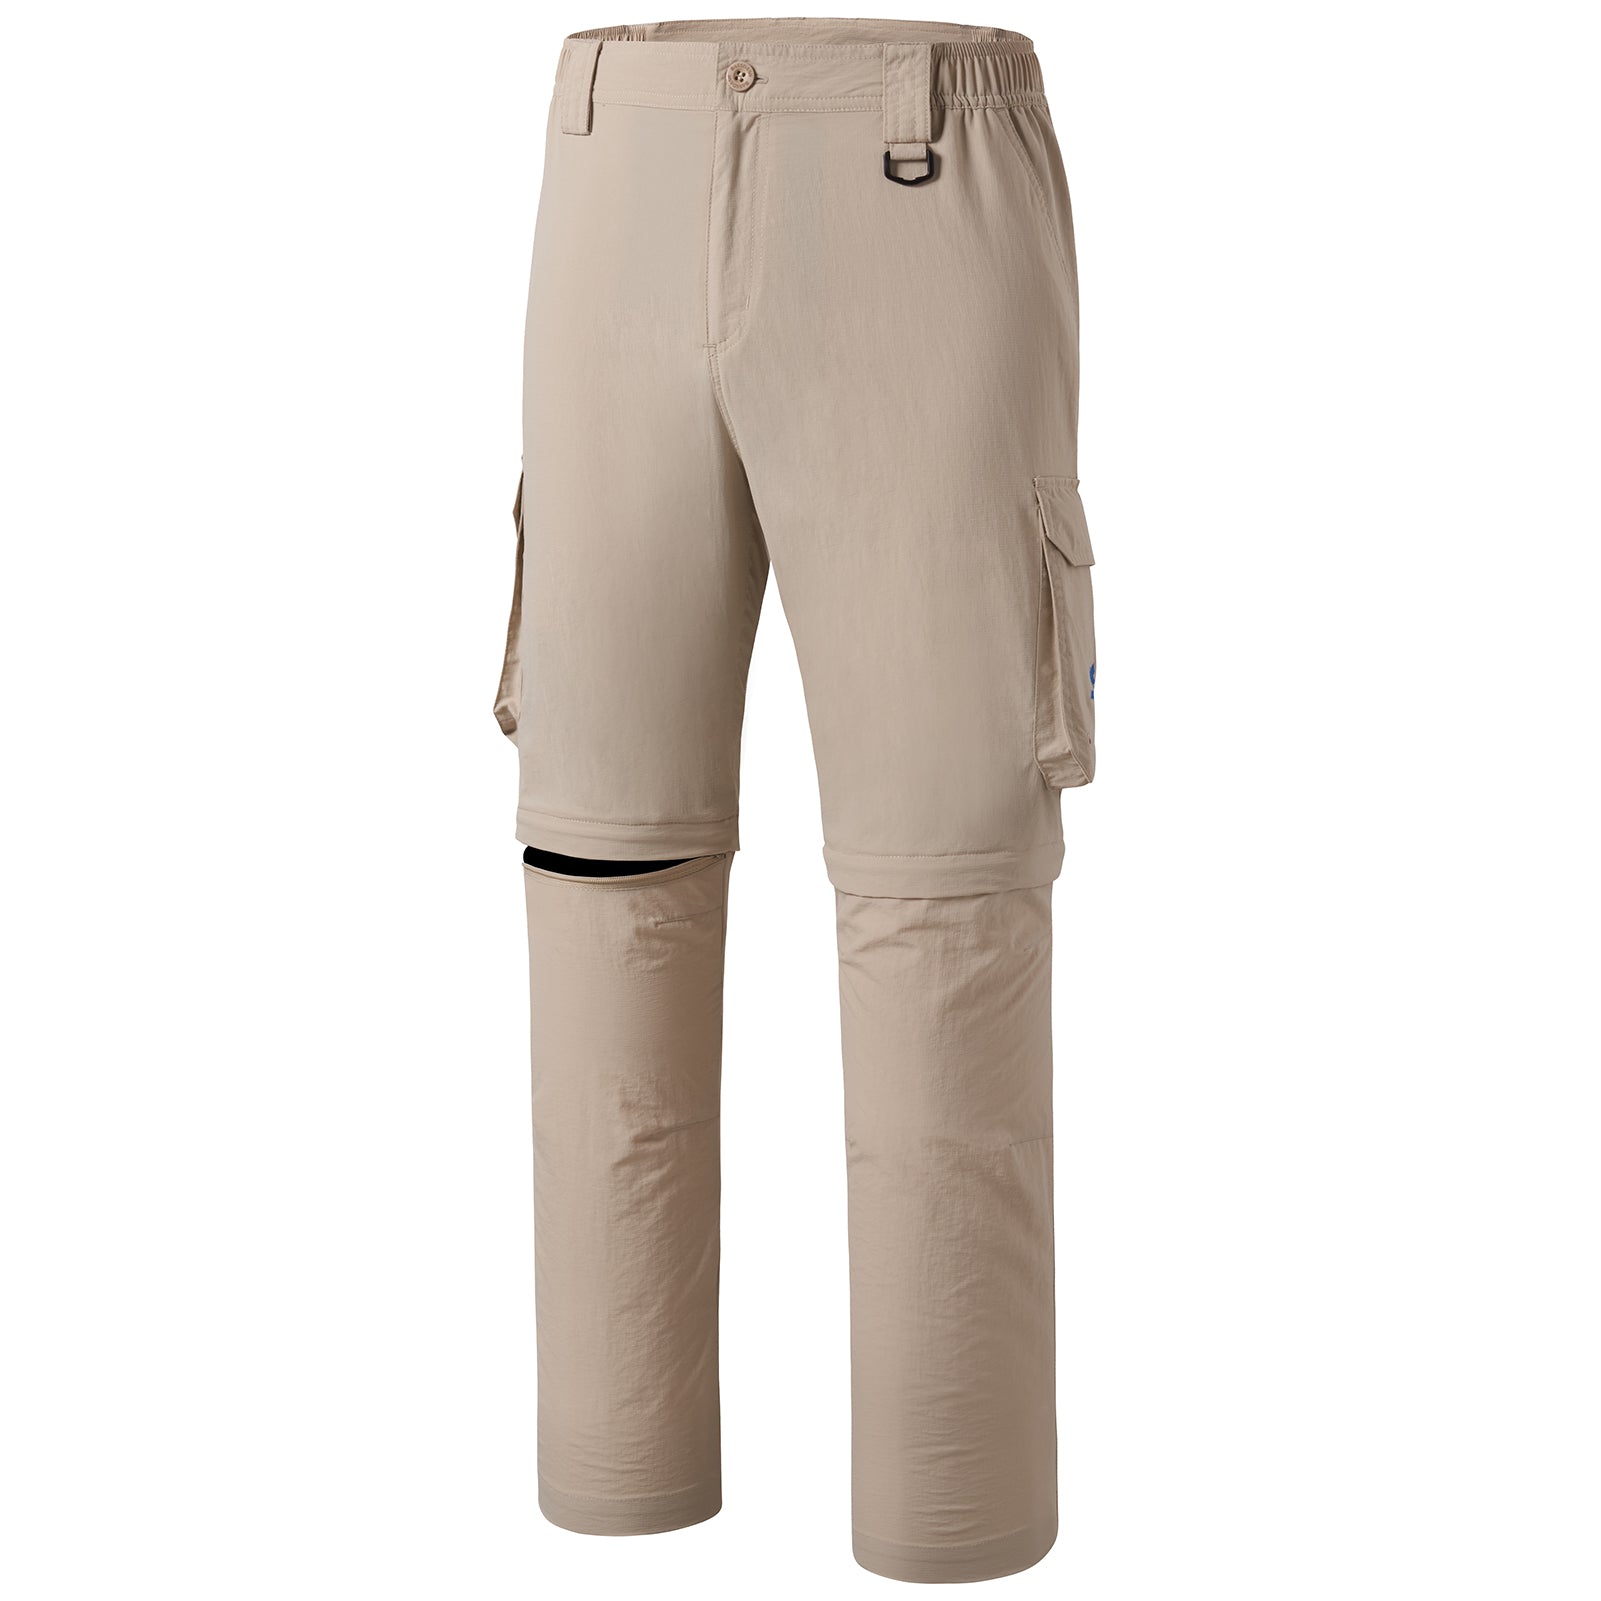 Vicious Fishing Convertible Khaki Tan Nylon Pants Shorts Men's